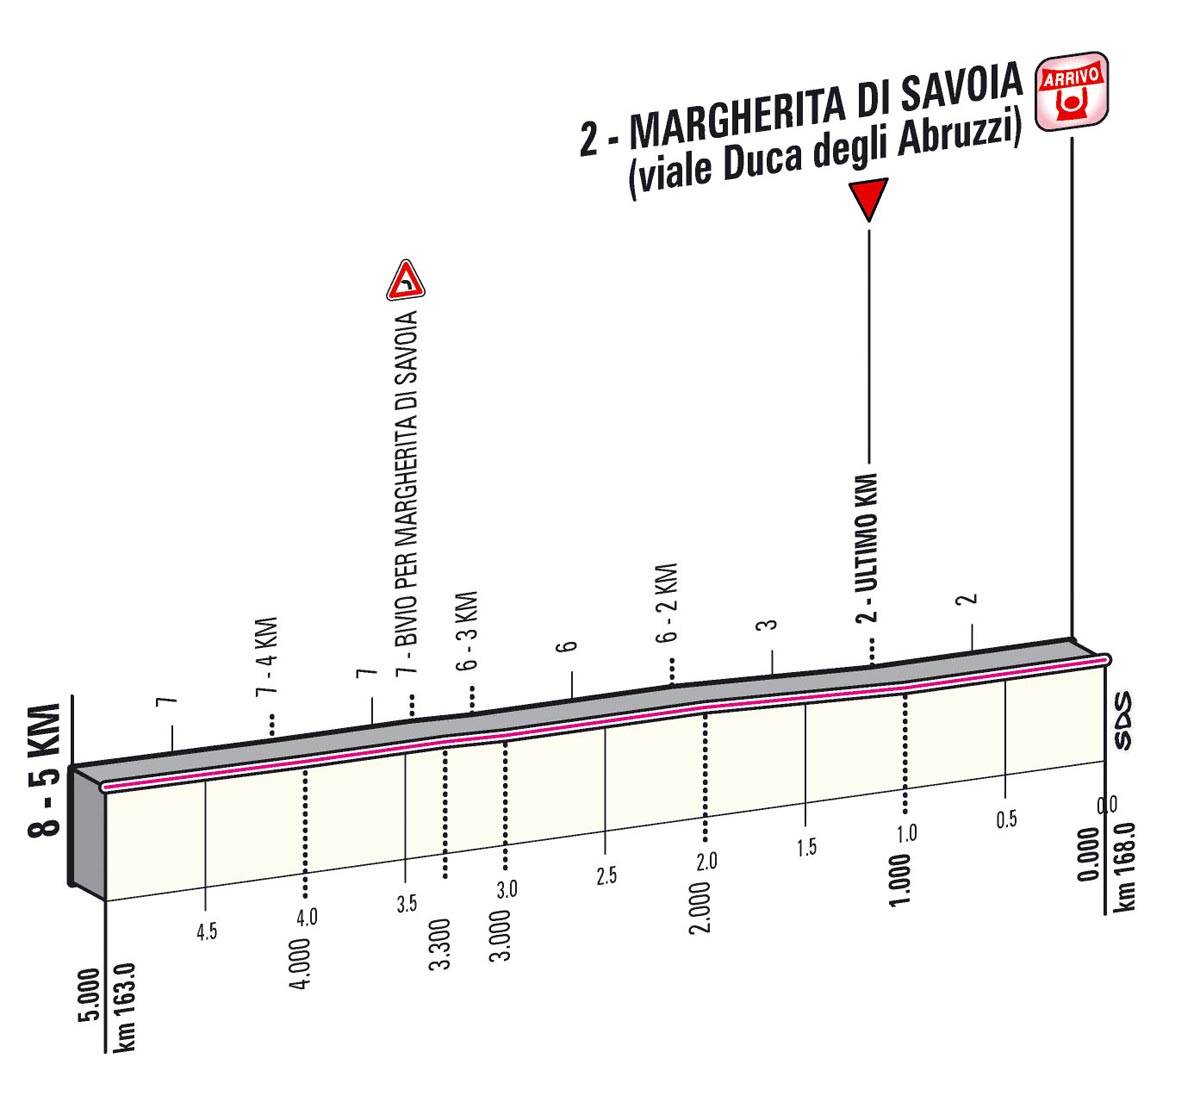 Giro d'Italia 2013 Stage 6 last kms